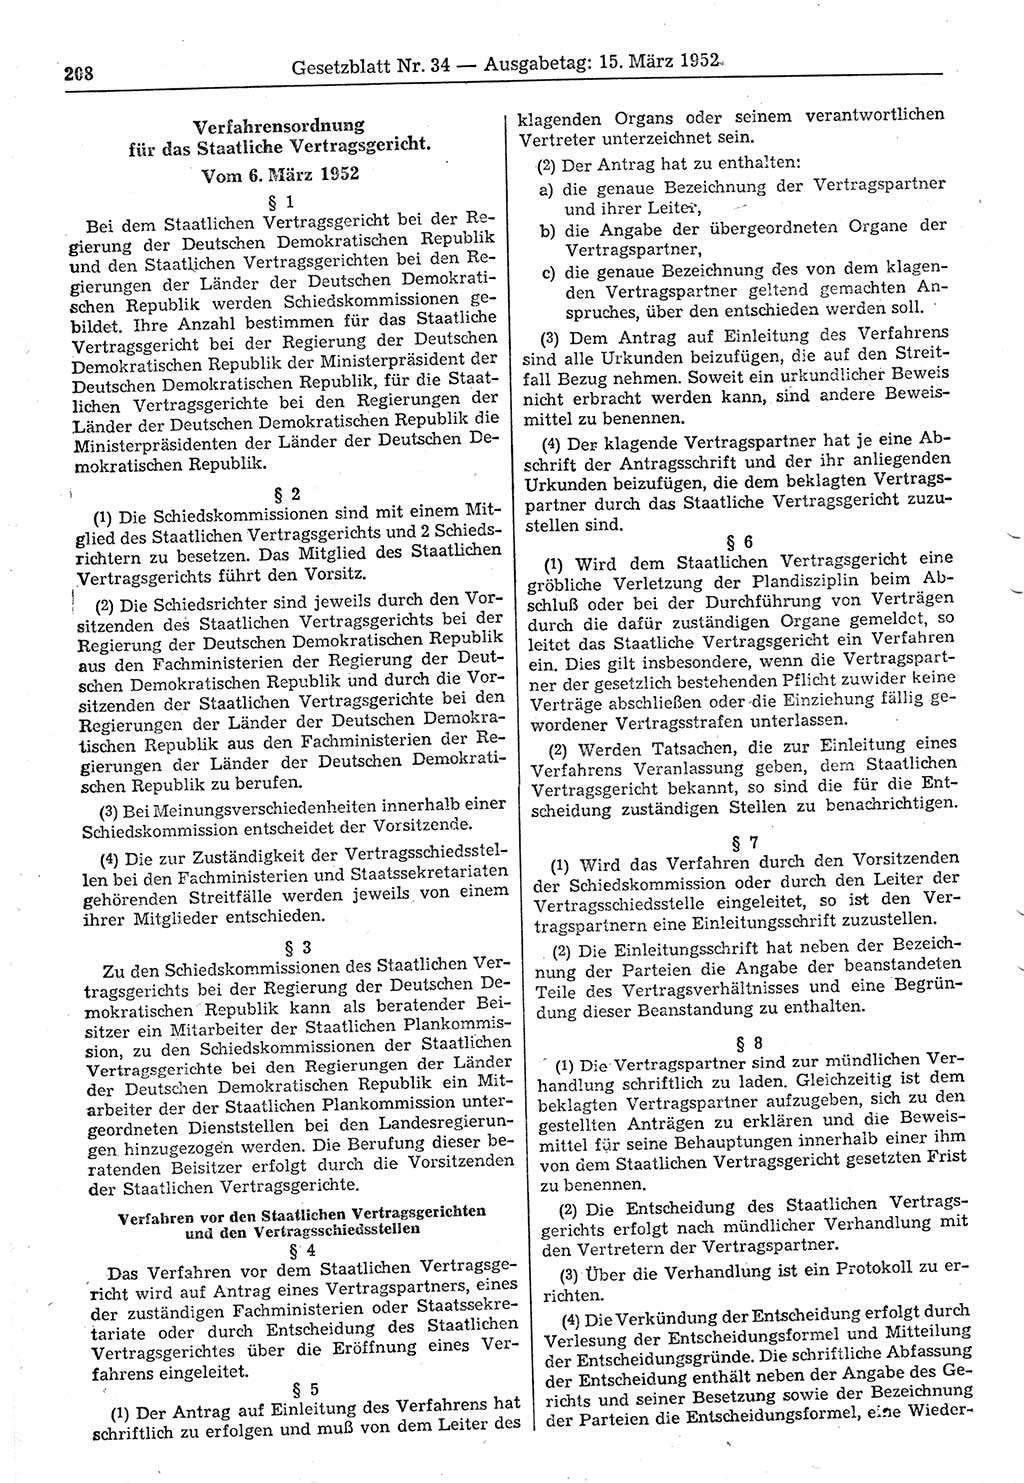 Gesetzblatt (GBl.) der Deutschen Demokratischen Republik (DDR) 1952, Seite 208 (GBl. DDR 1952, S. 208)